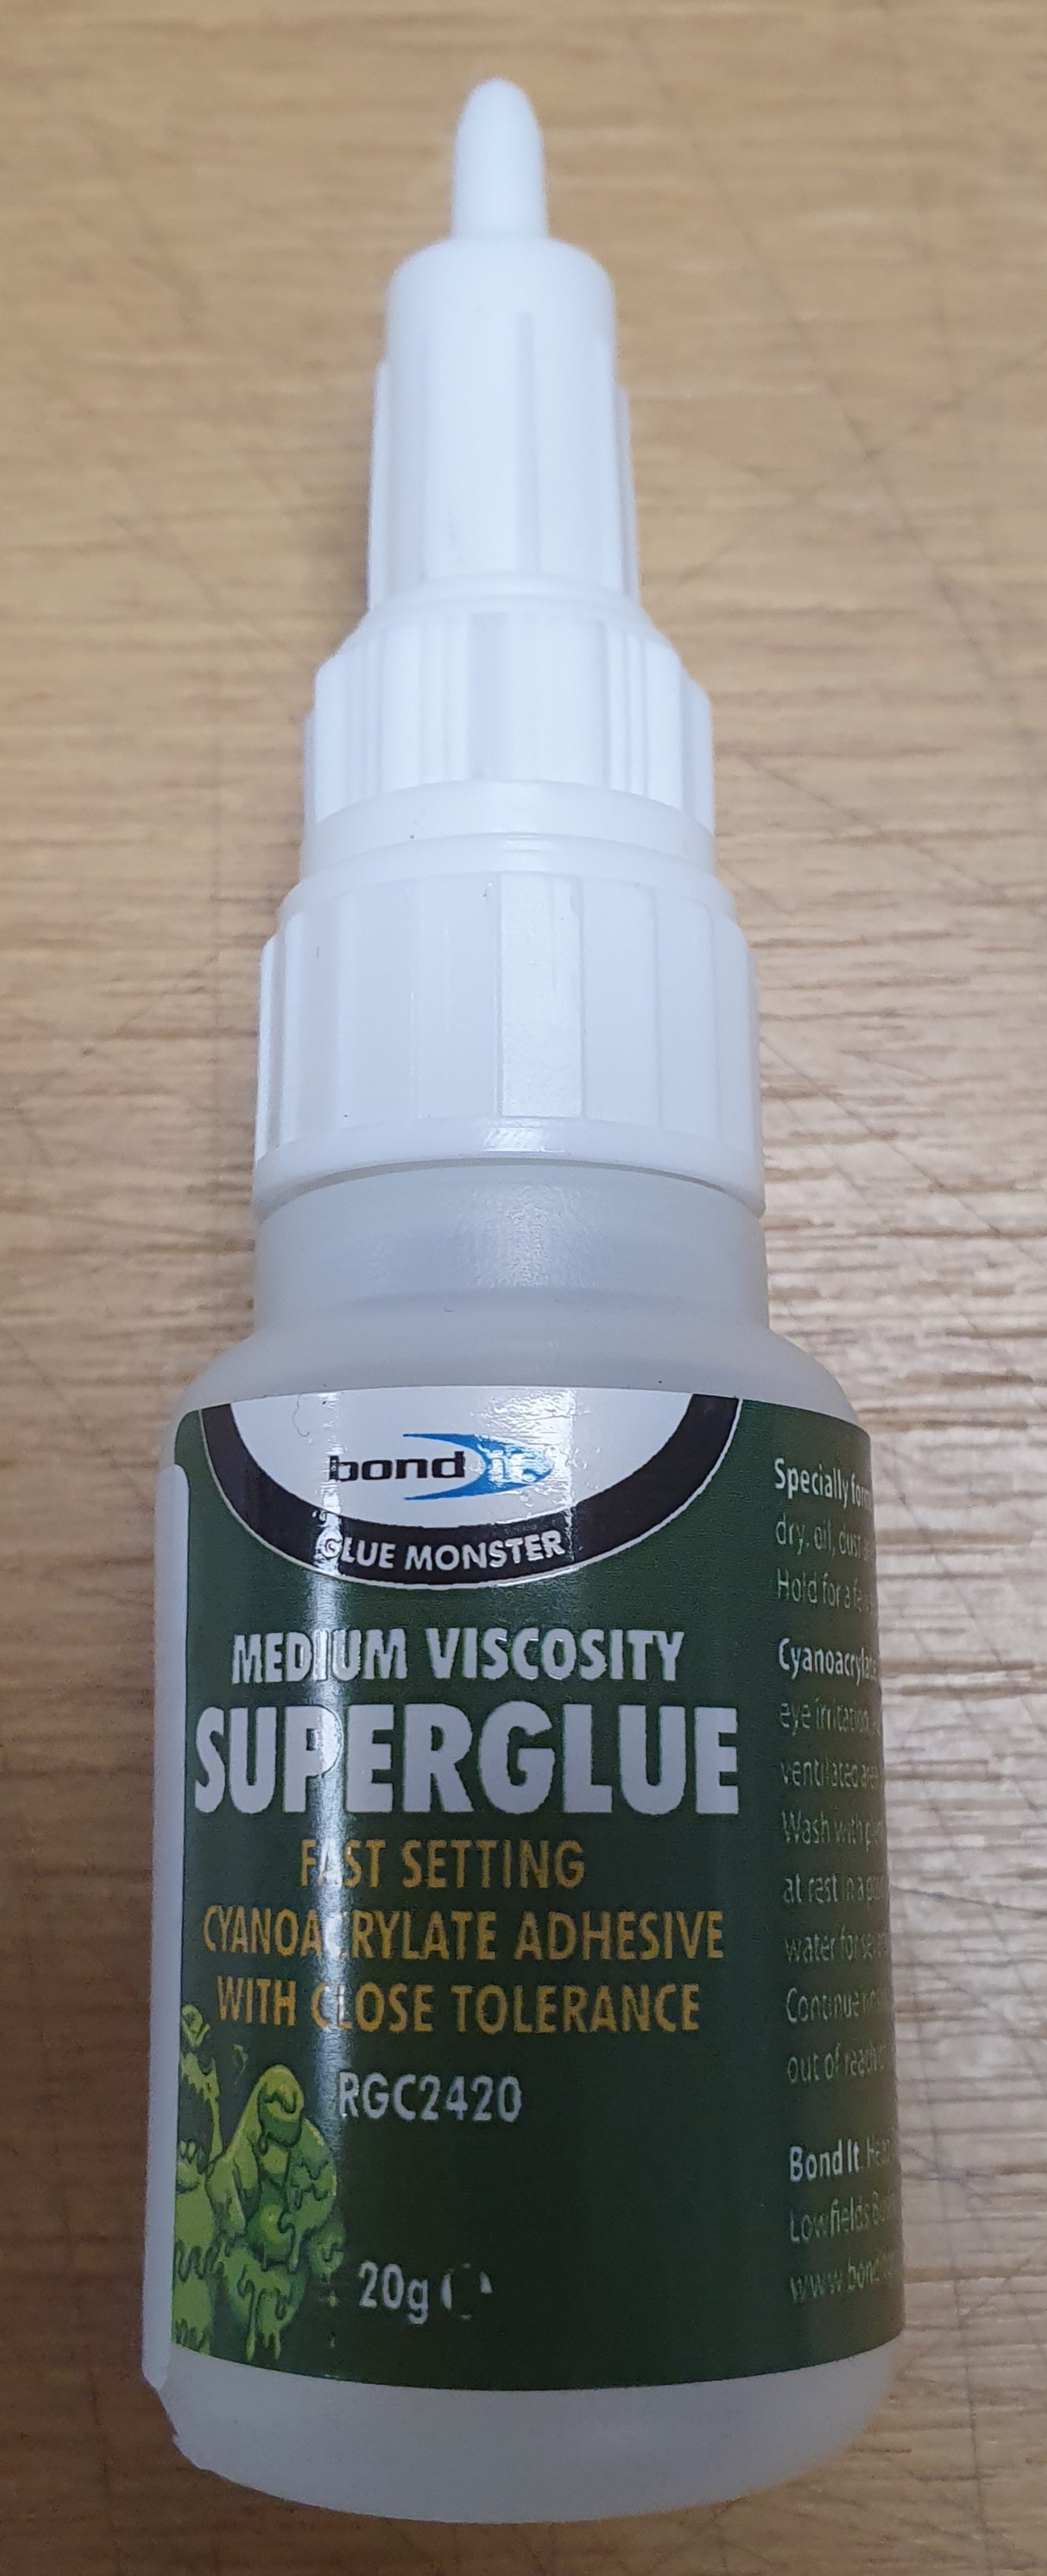 Superglue medium viscosity RGC2420